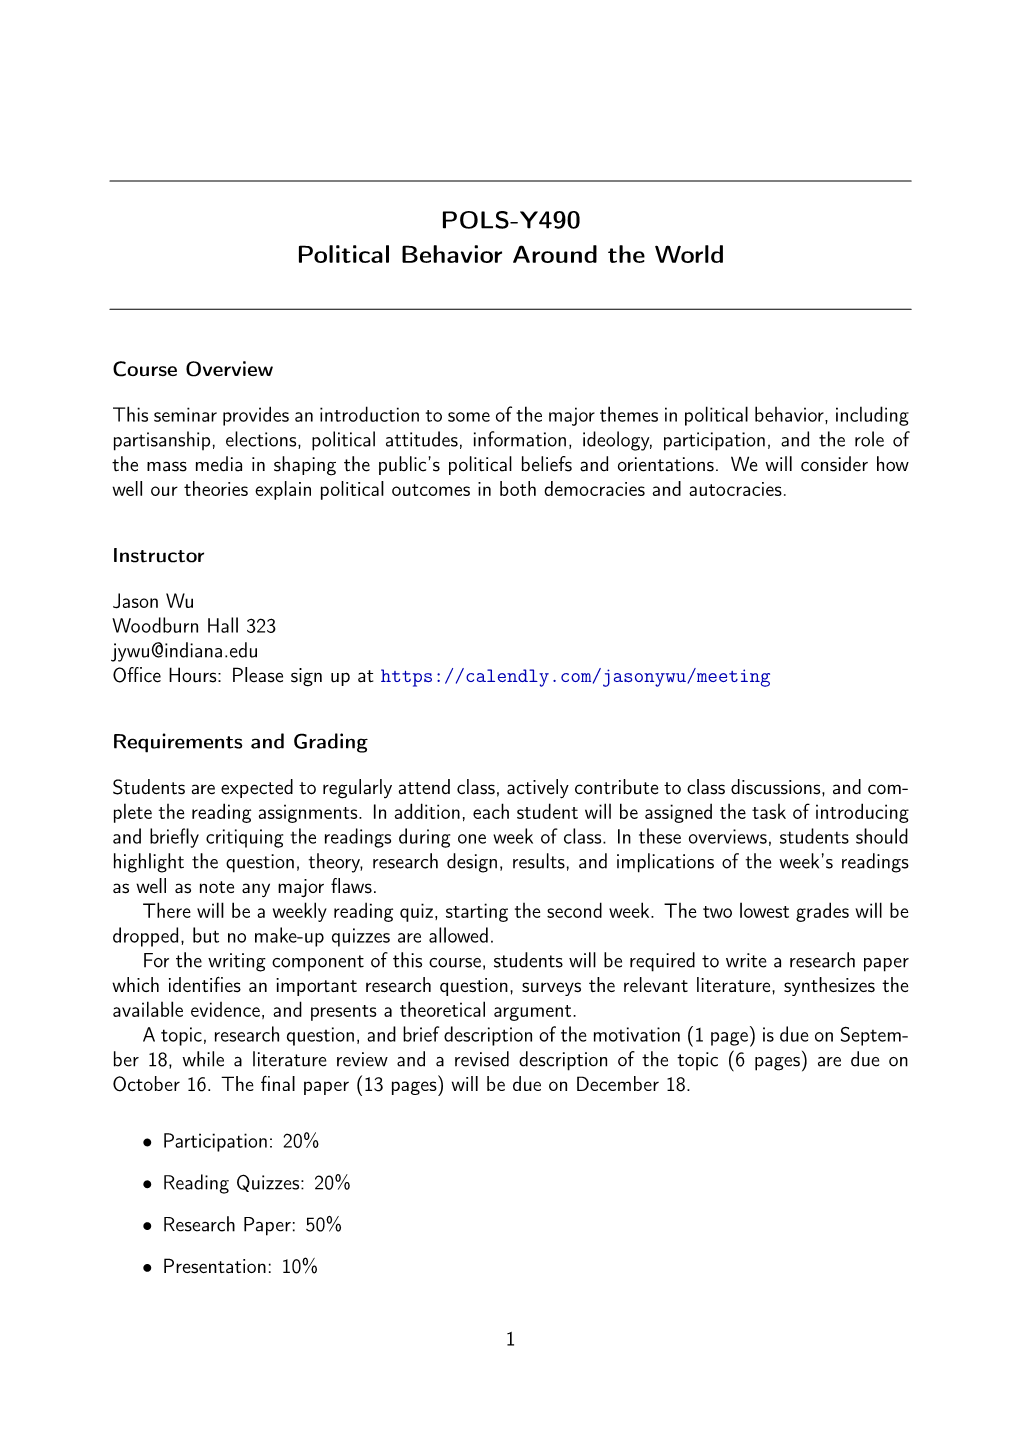 POLS-Y490 Political Behavior Around the World